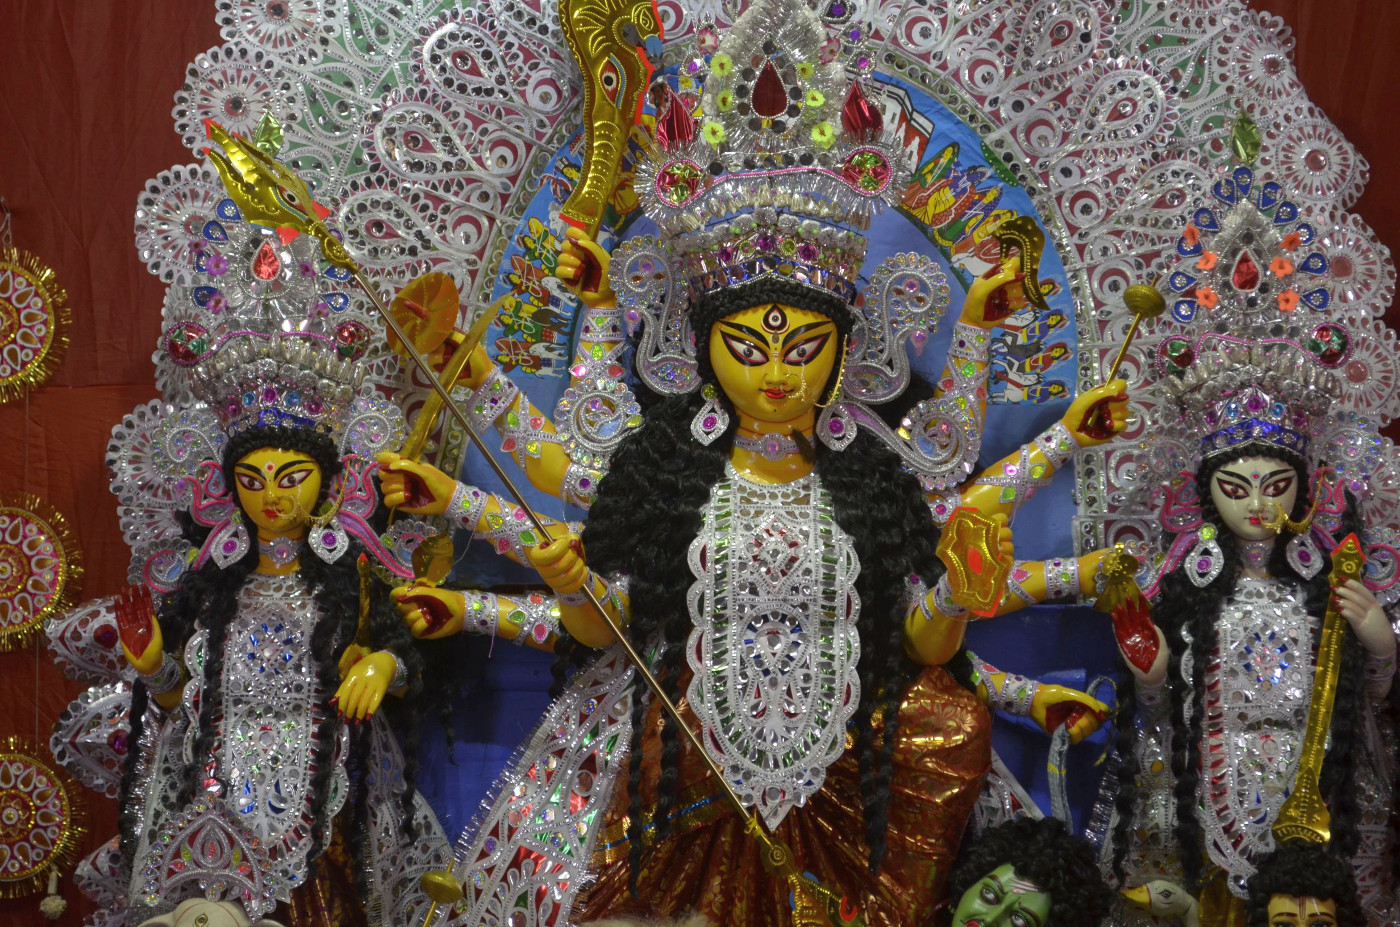 Our own Ma Durga, Kolkata Durga Puja 2015